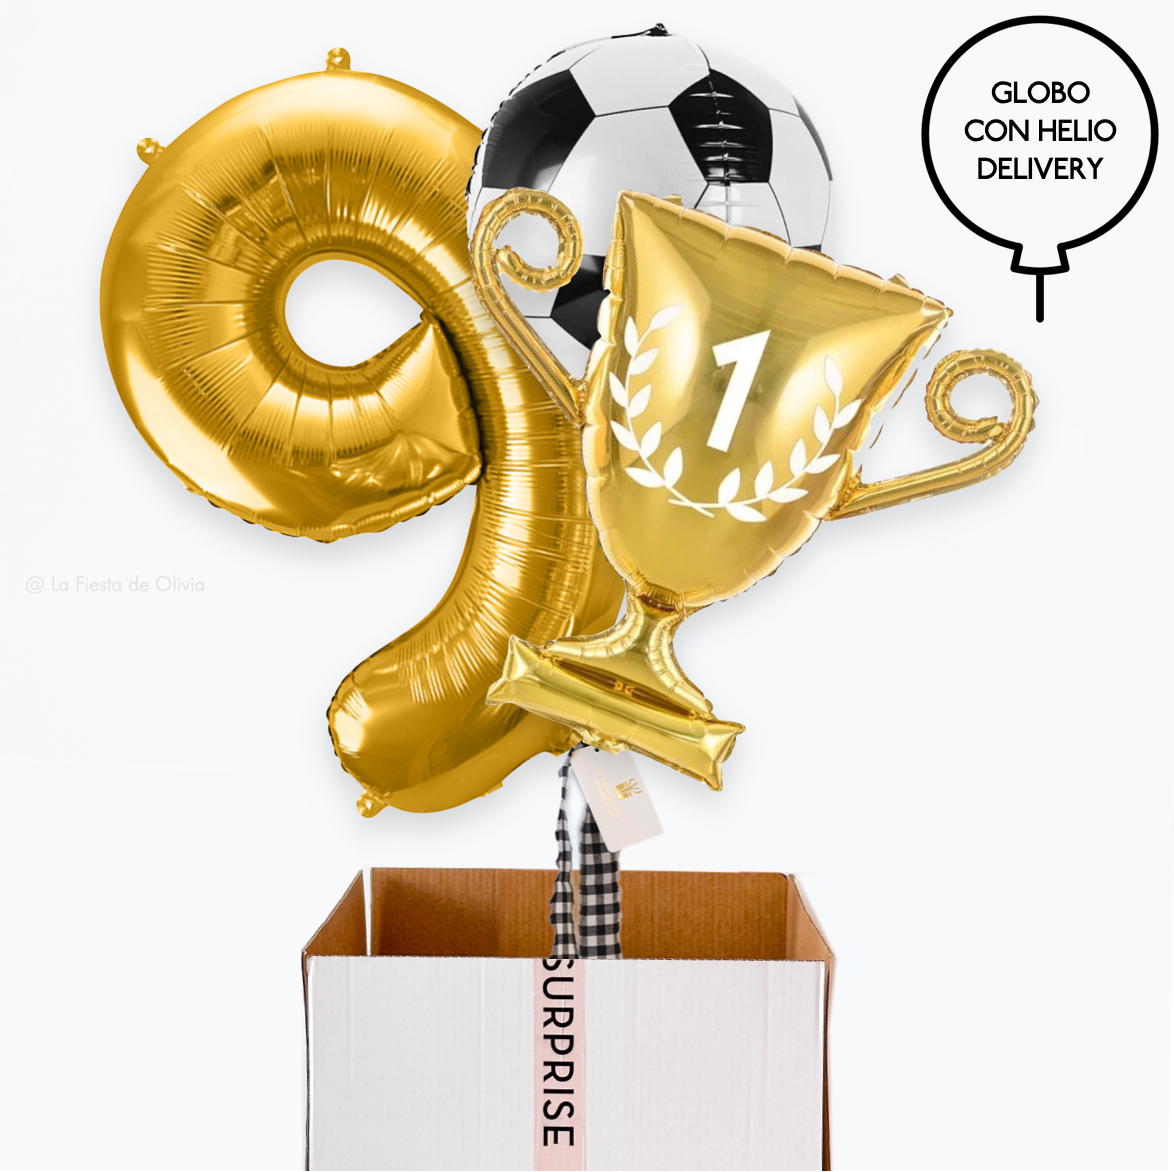  Buquê de balões inflados para aniversário de futebol